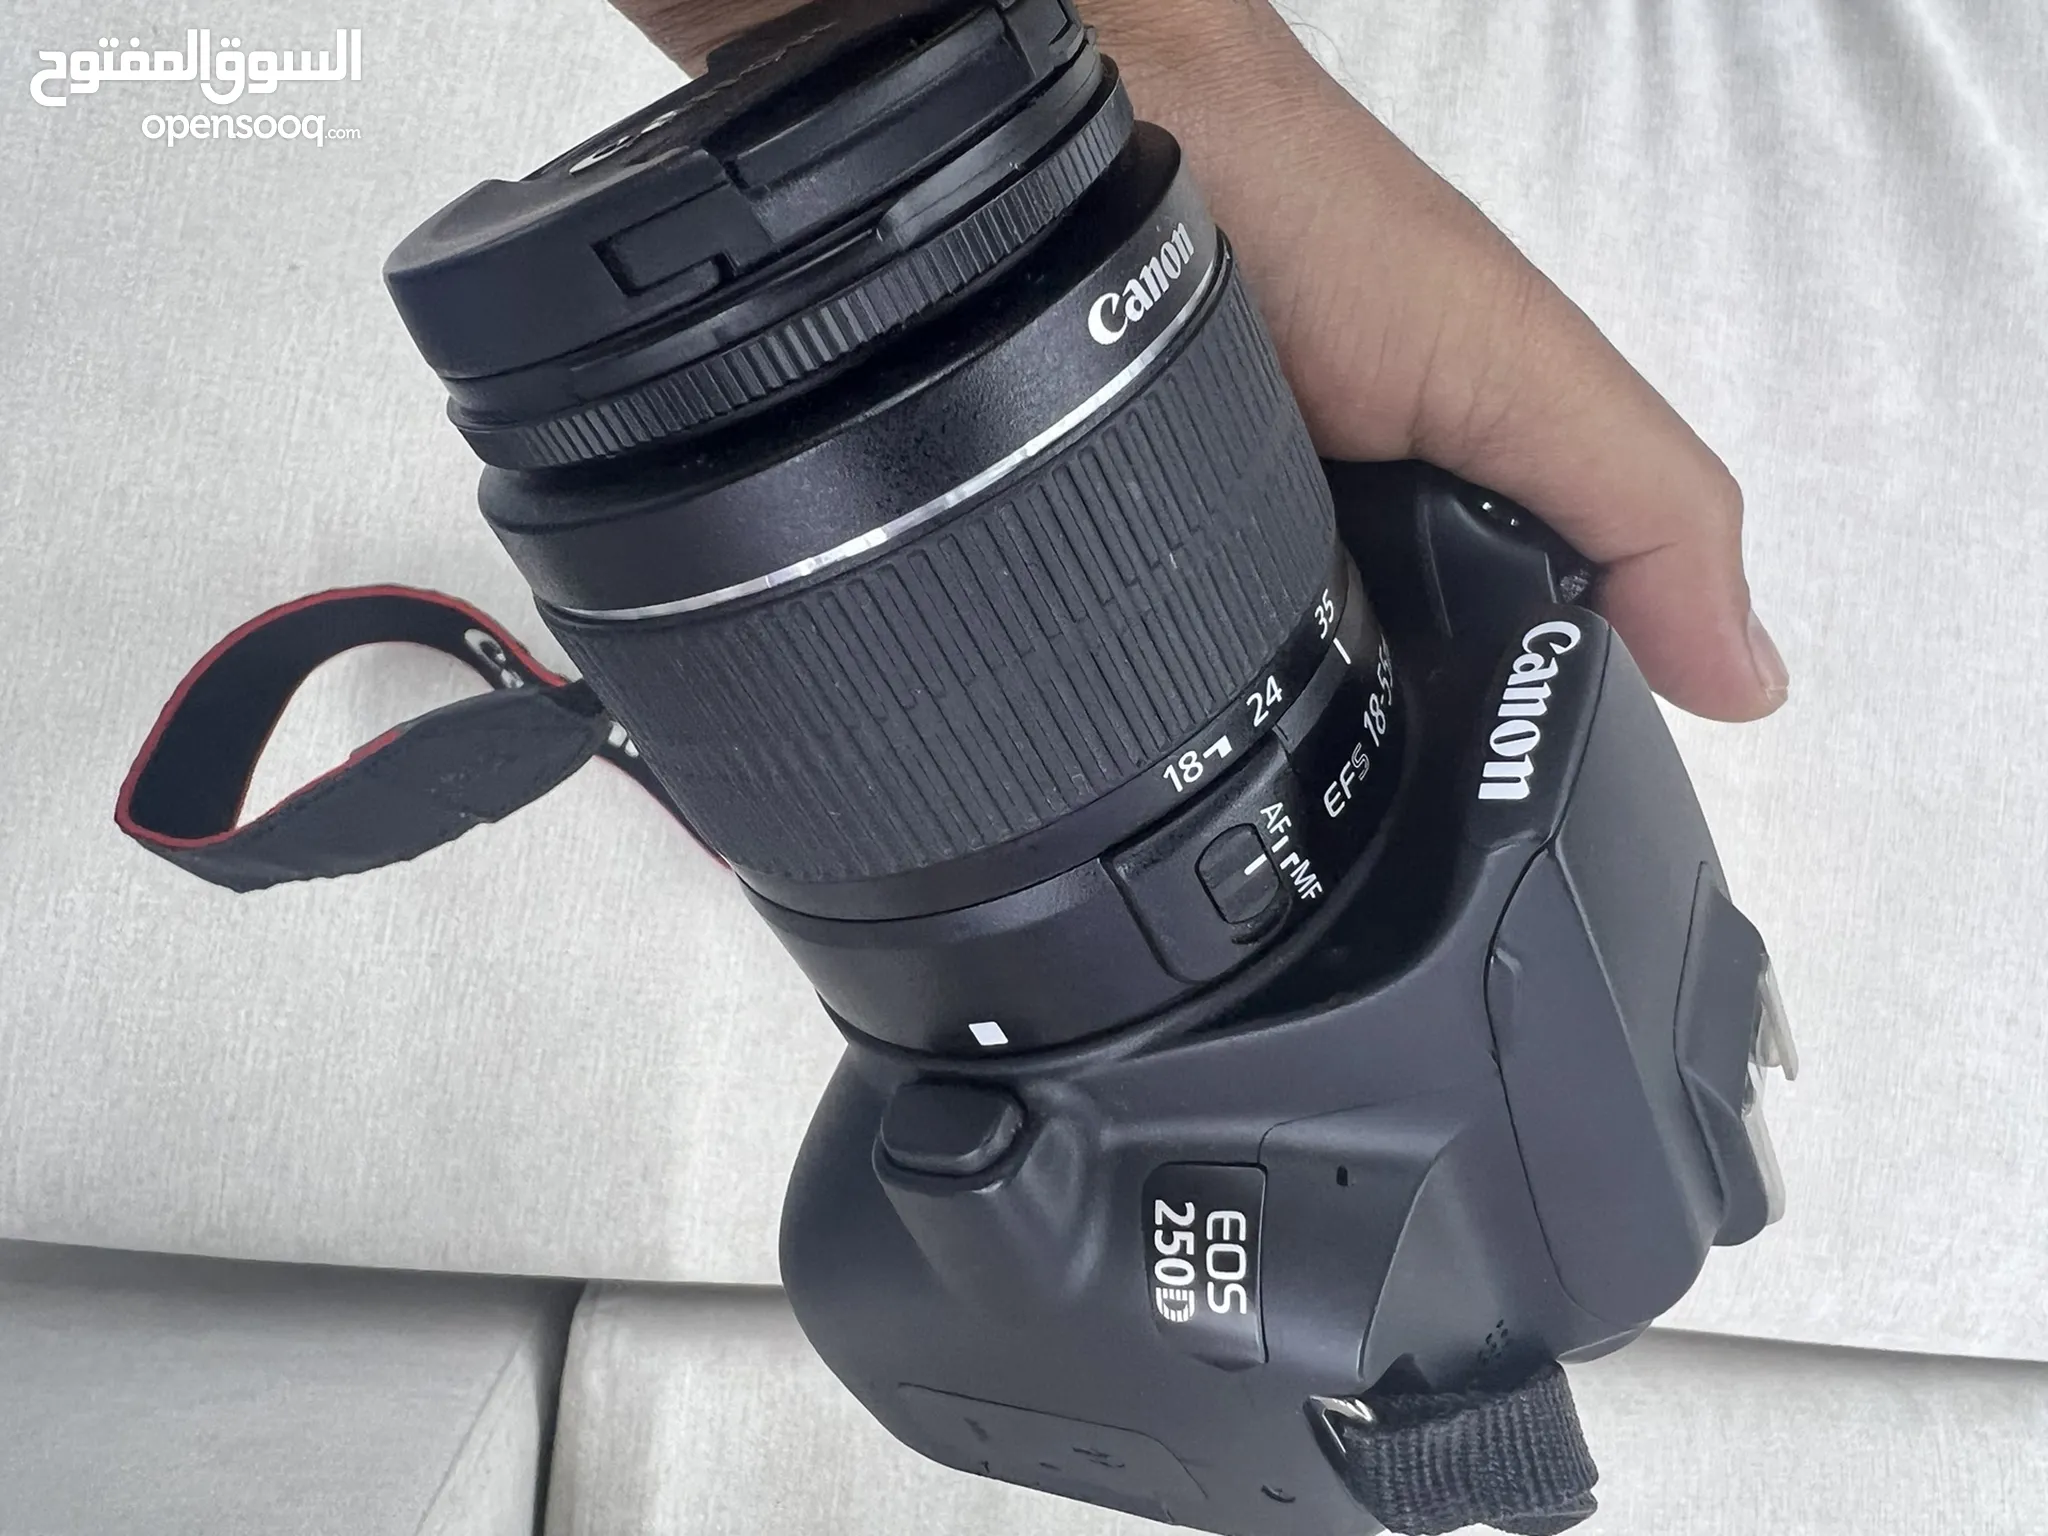 كاميرات تصوير للبيع : تصوير فوتوغرافي : فوري : جديد ومستعمل : أسعار :  الإمارات | السوق المفتوح